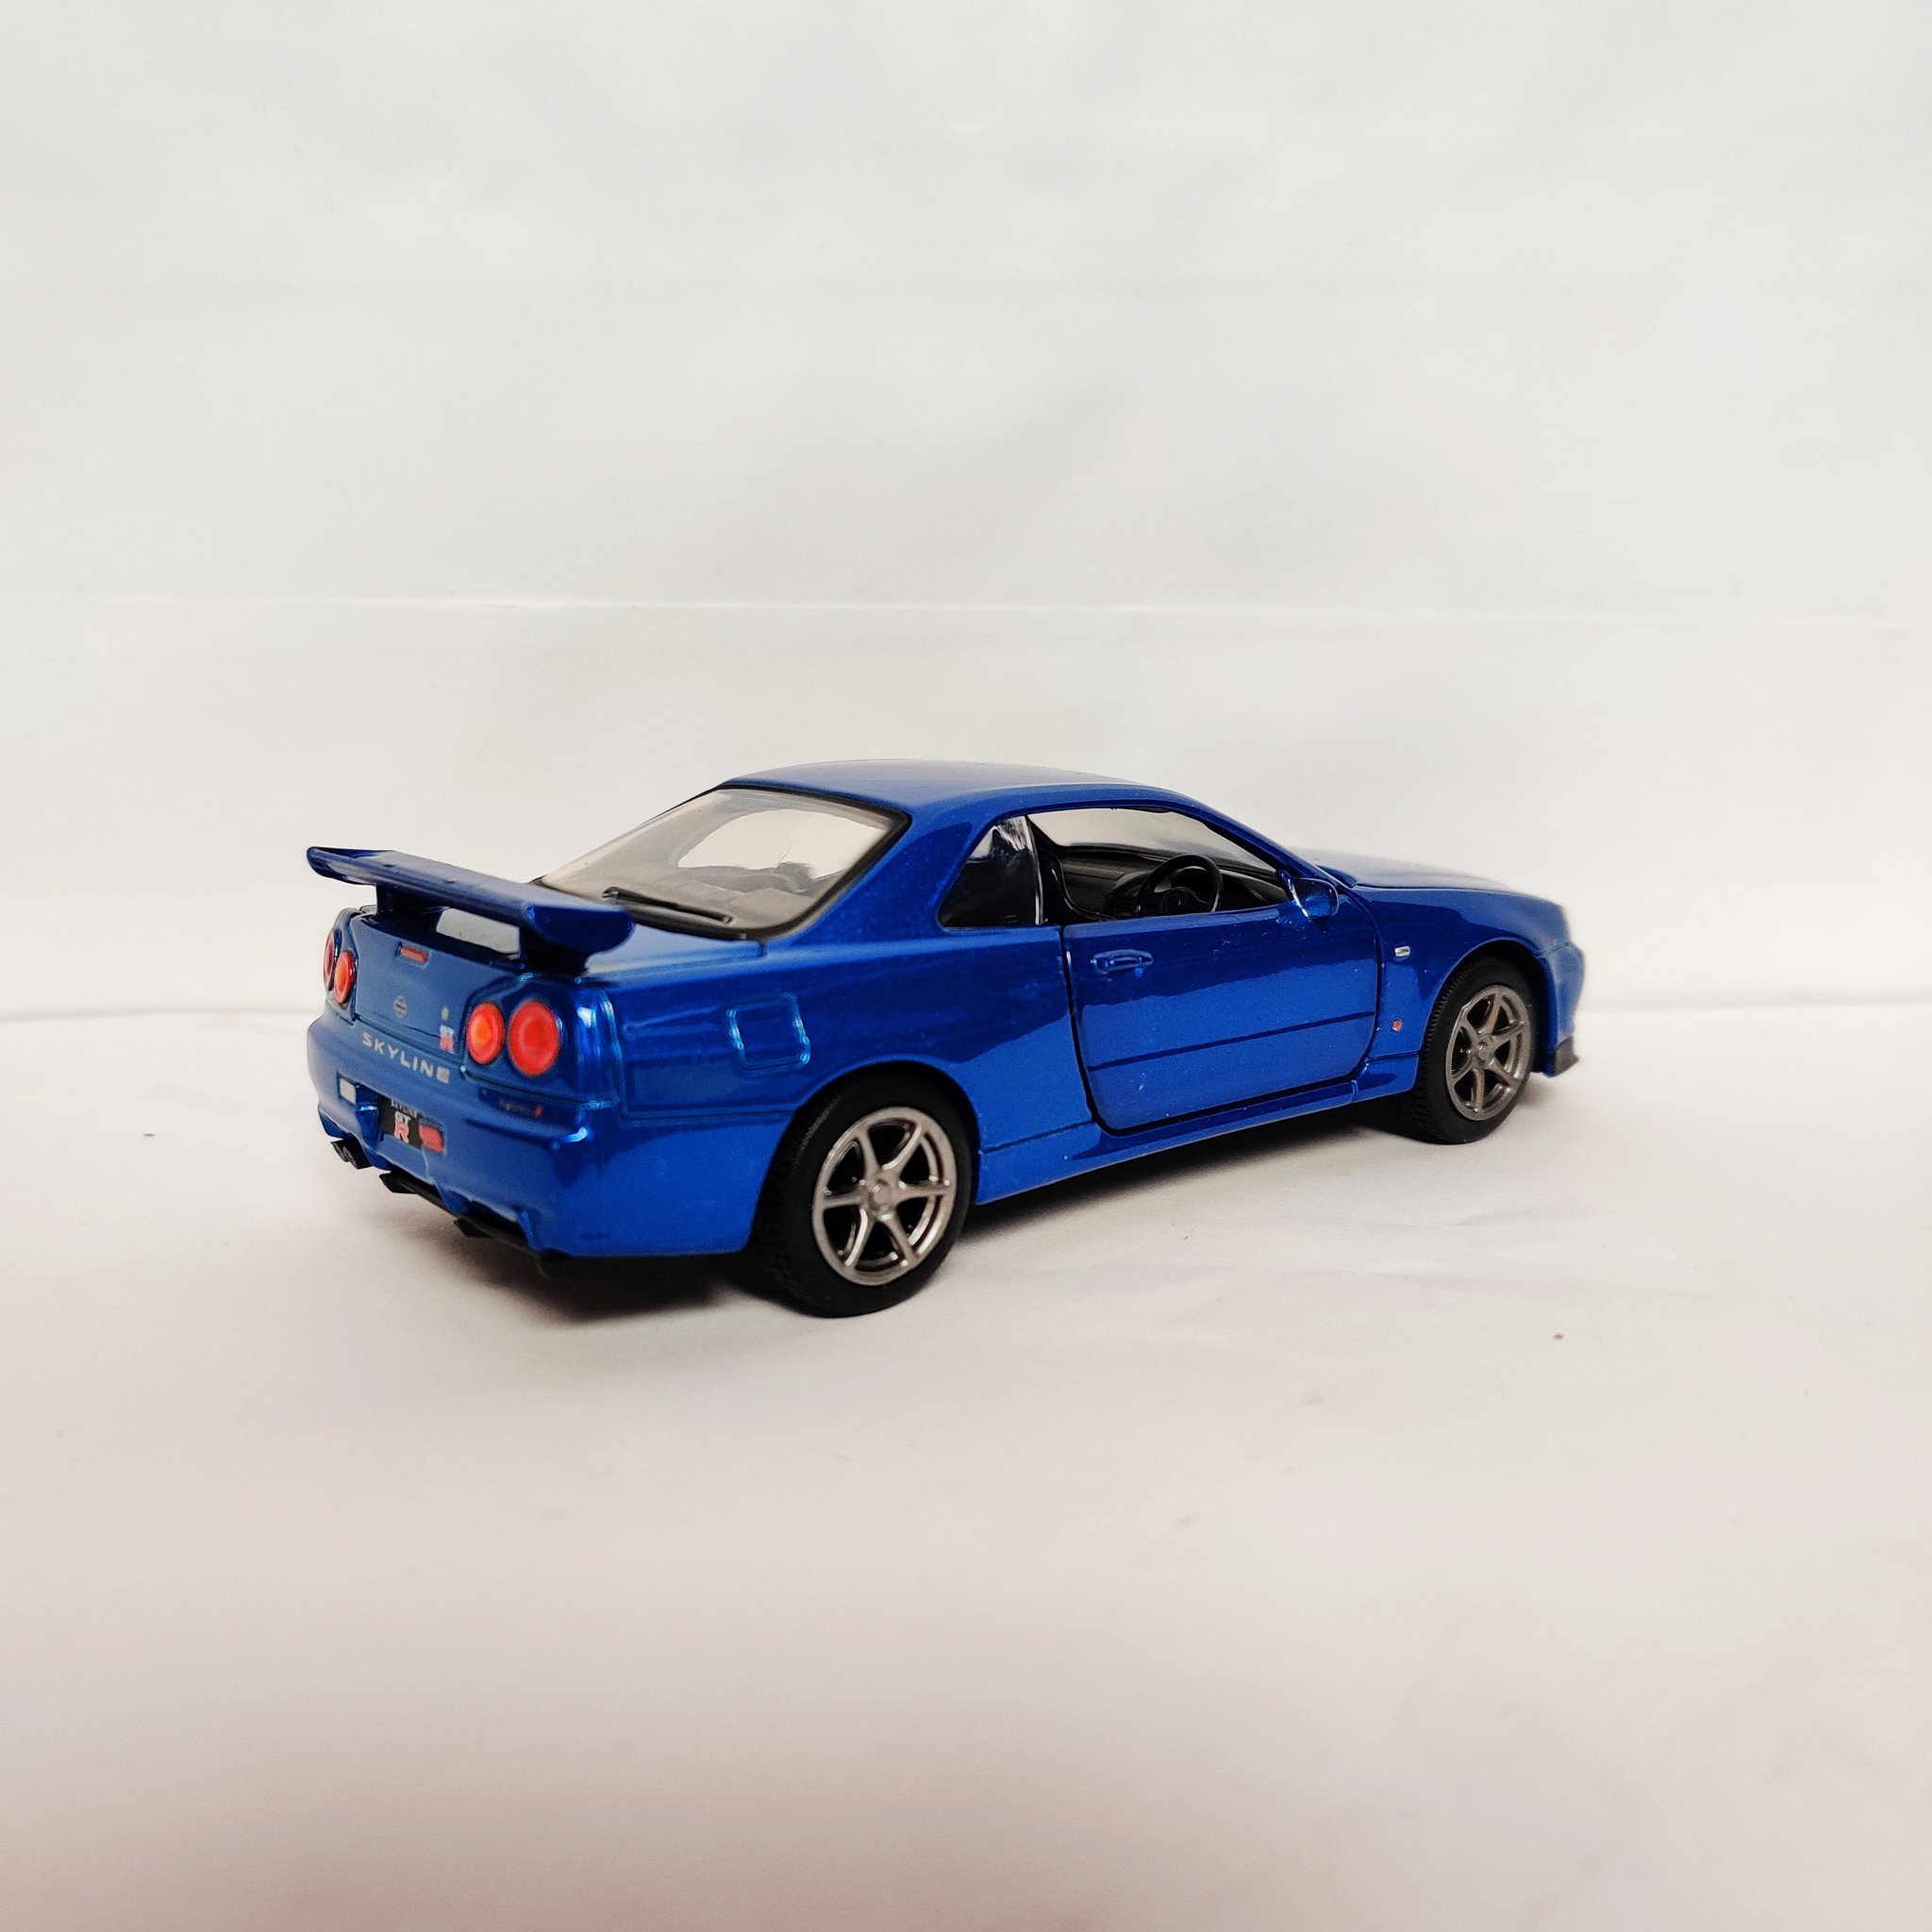 Skala 1/36 Nissan GT-R34 V-Spec II, vänsterstyrd, Blå metalic från Tayumo